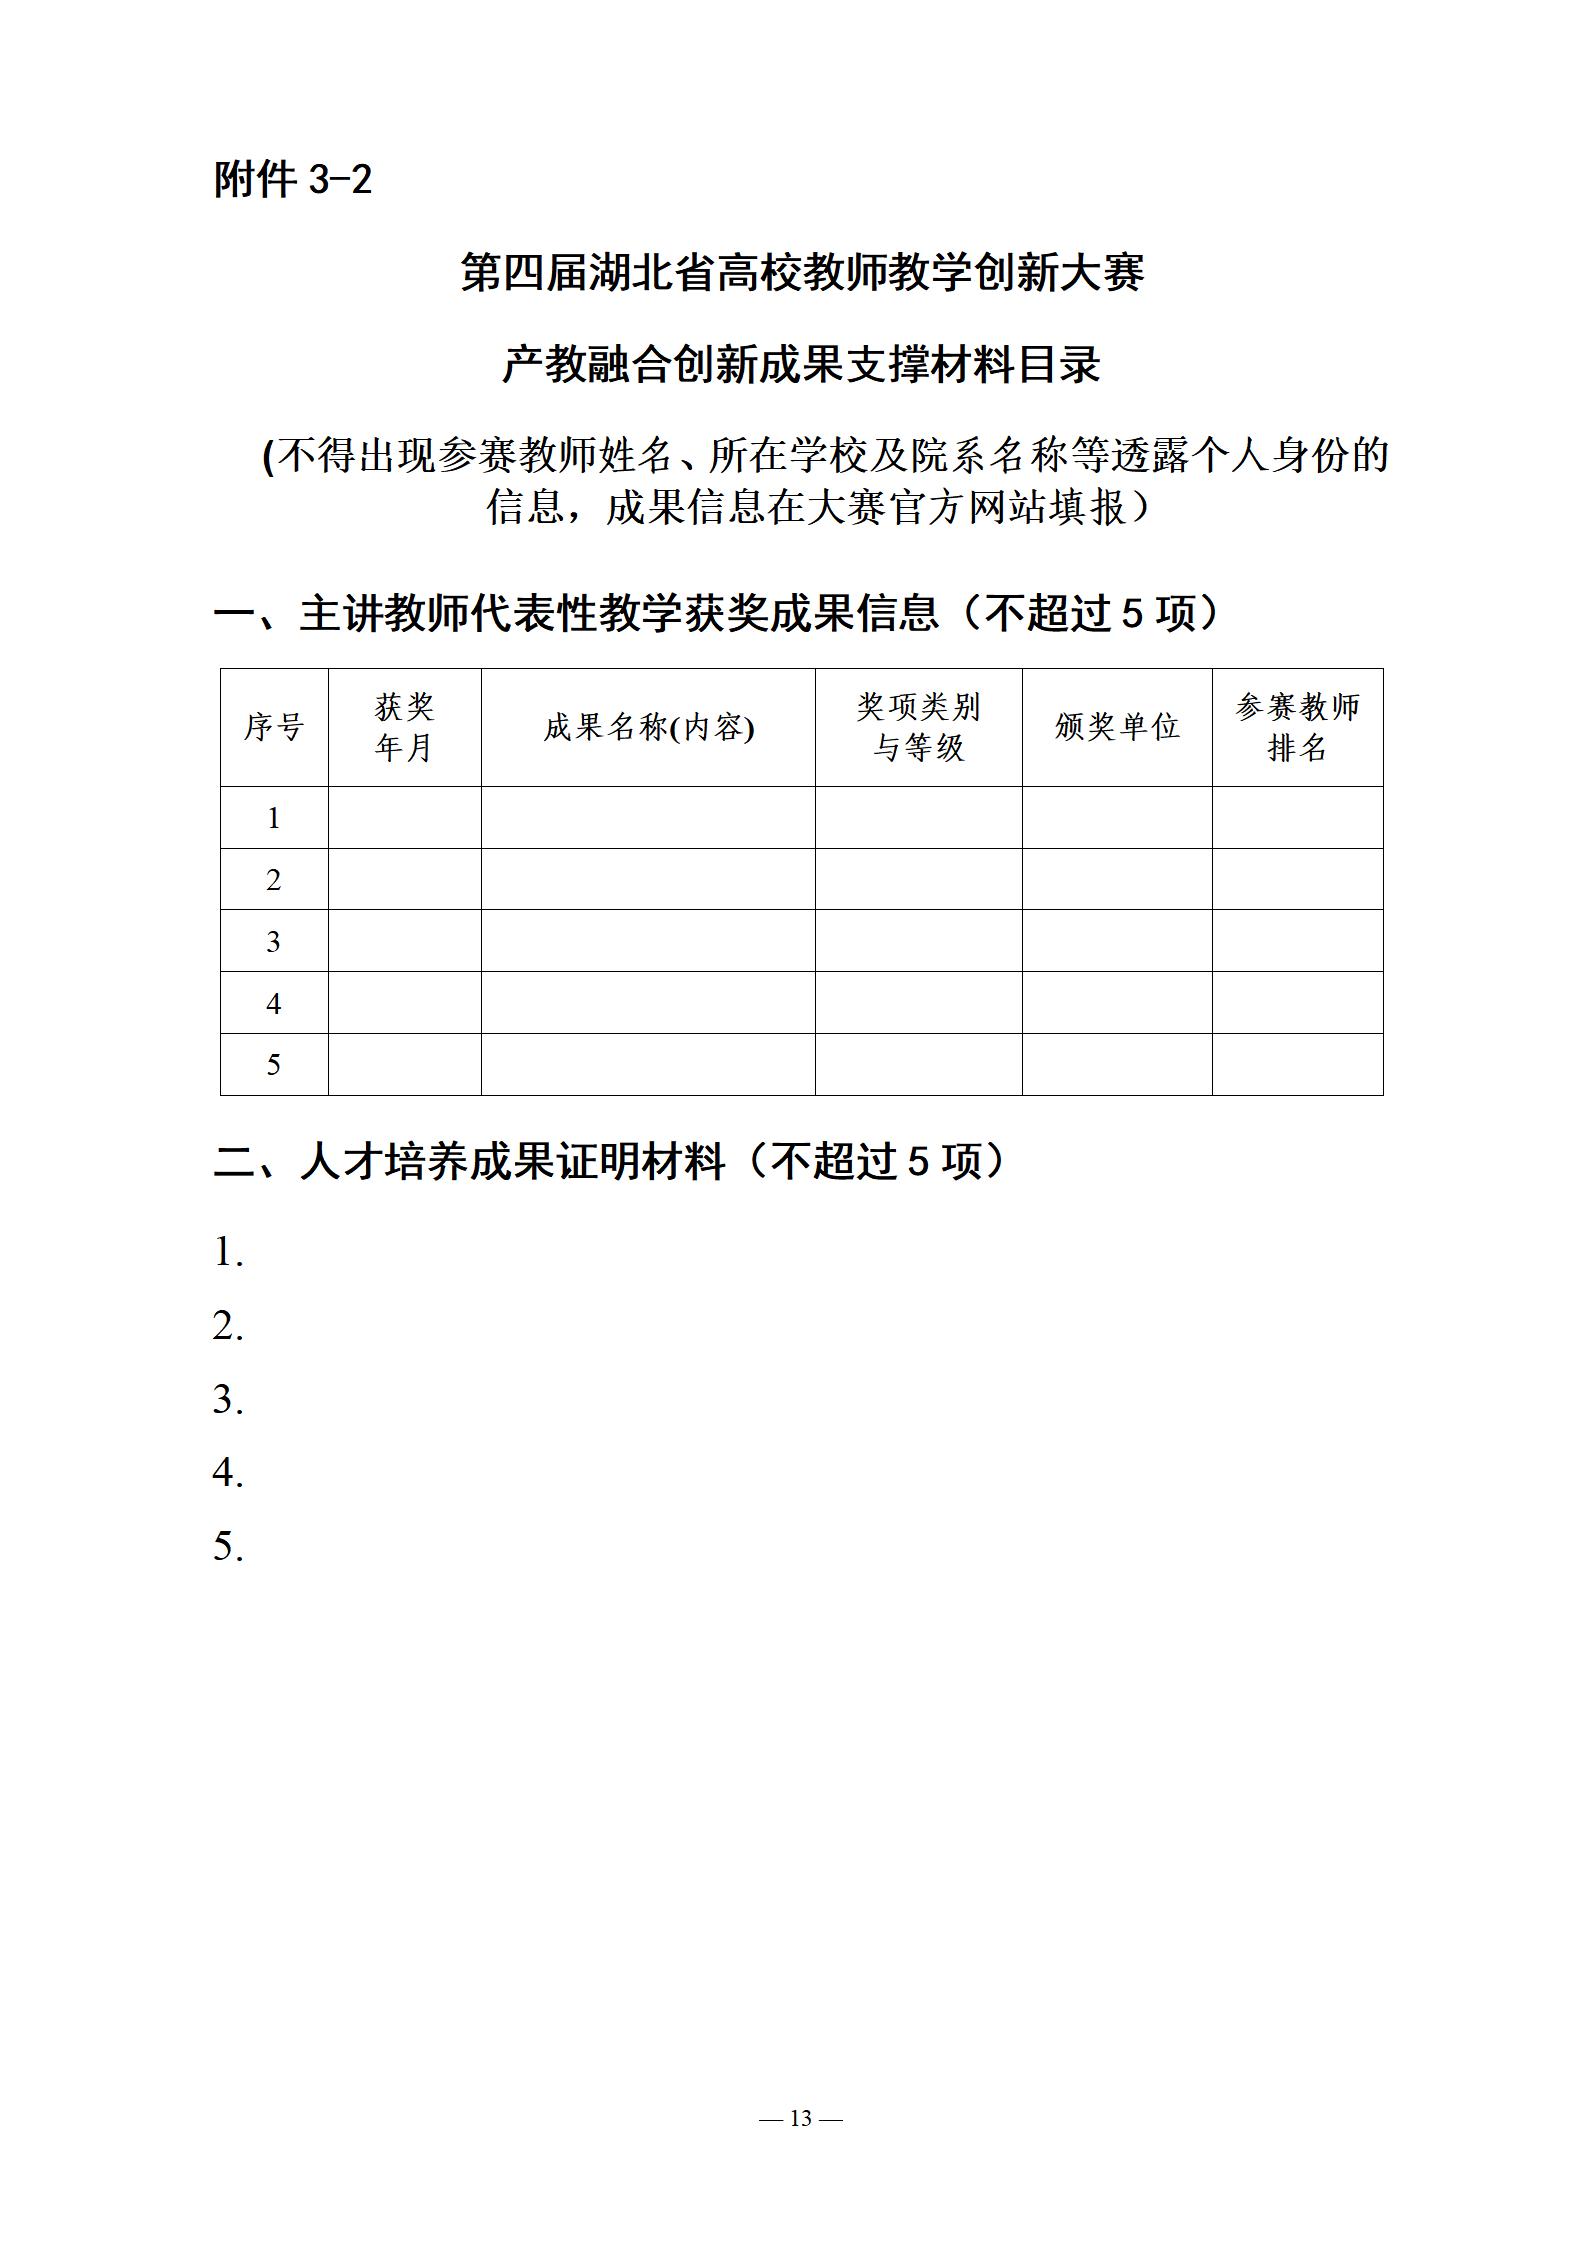 关于举办第四届湖北省高校教师教学创新大赛产教融合赛道赛事的通知（定稿）_13.jpg